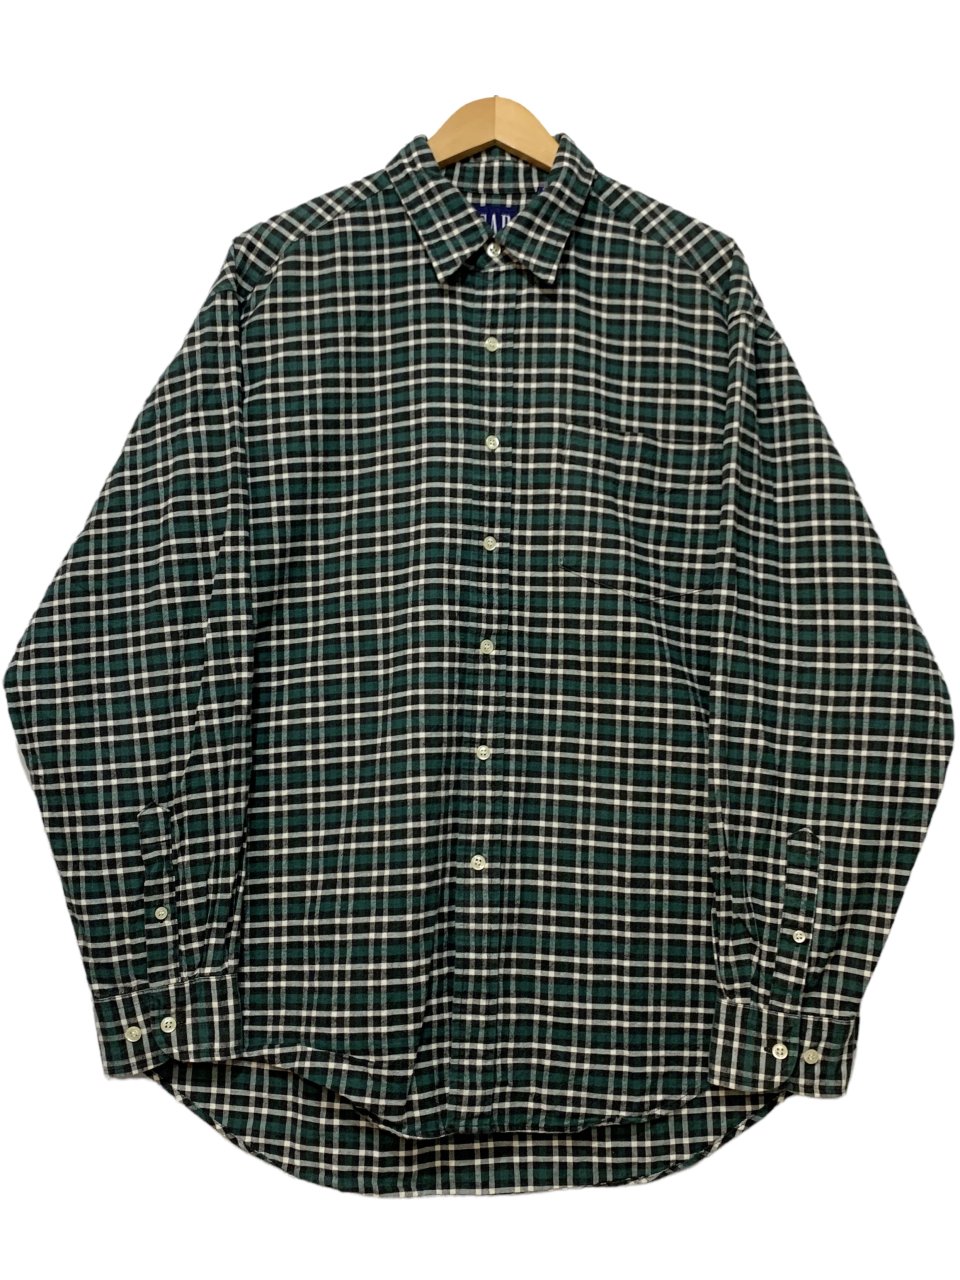 90s OLD GAP Check Cotton L/S Shirt 緑 L オールドギャップ 長袖